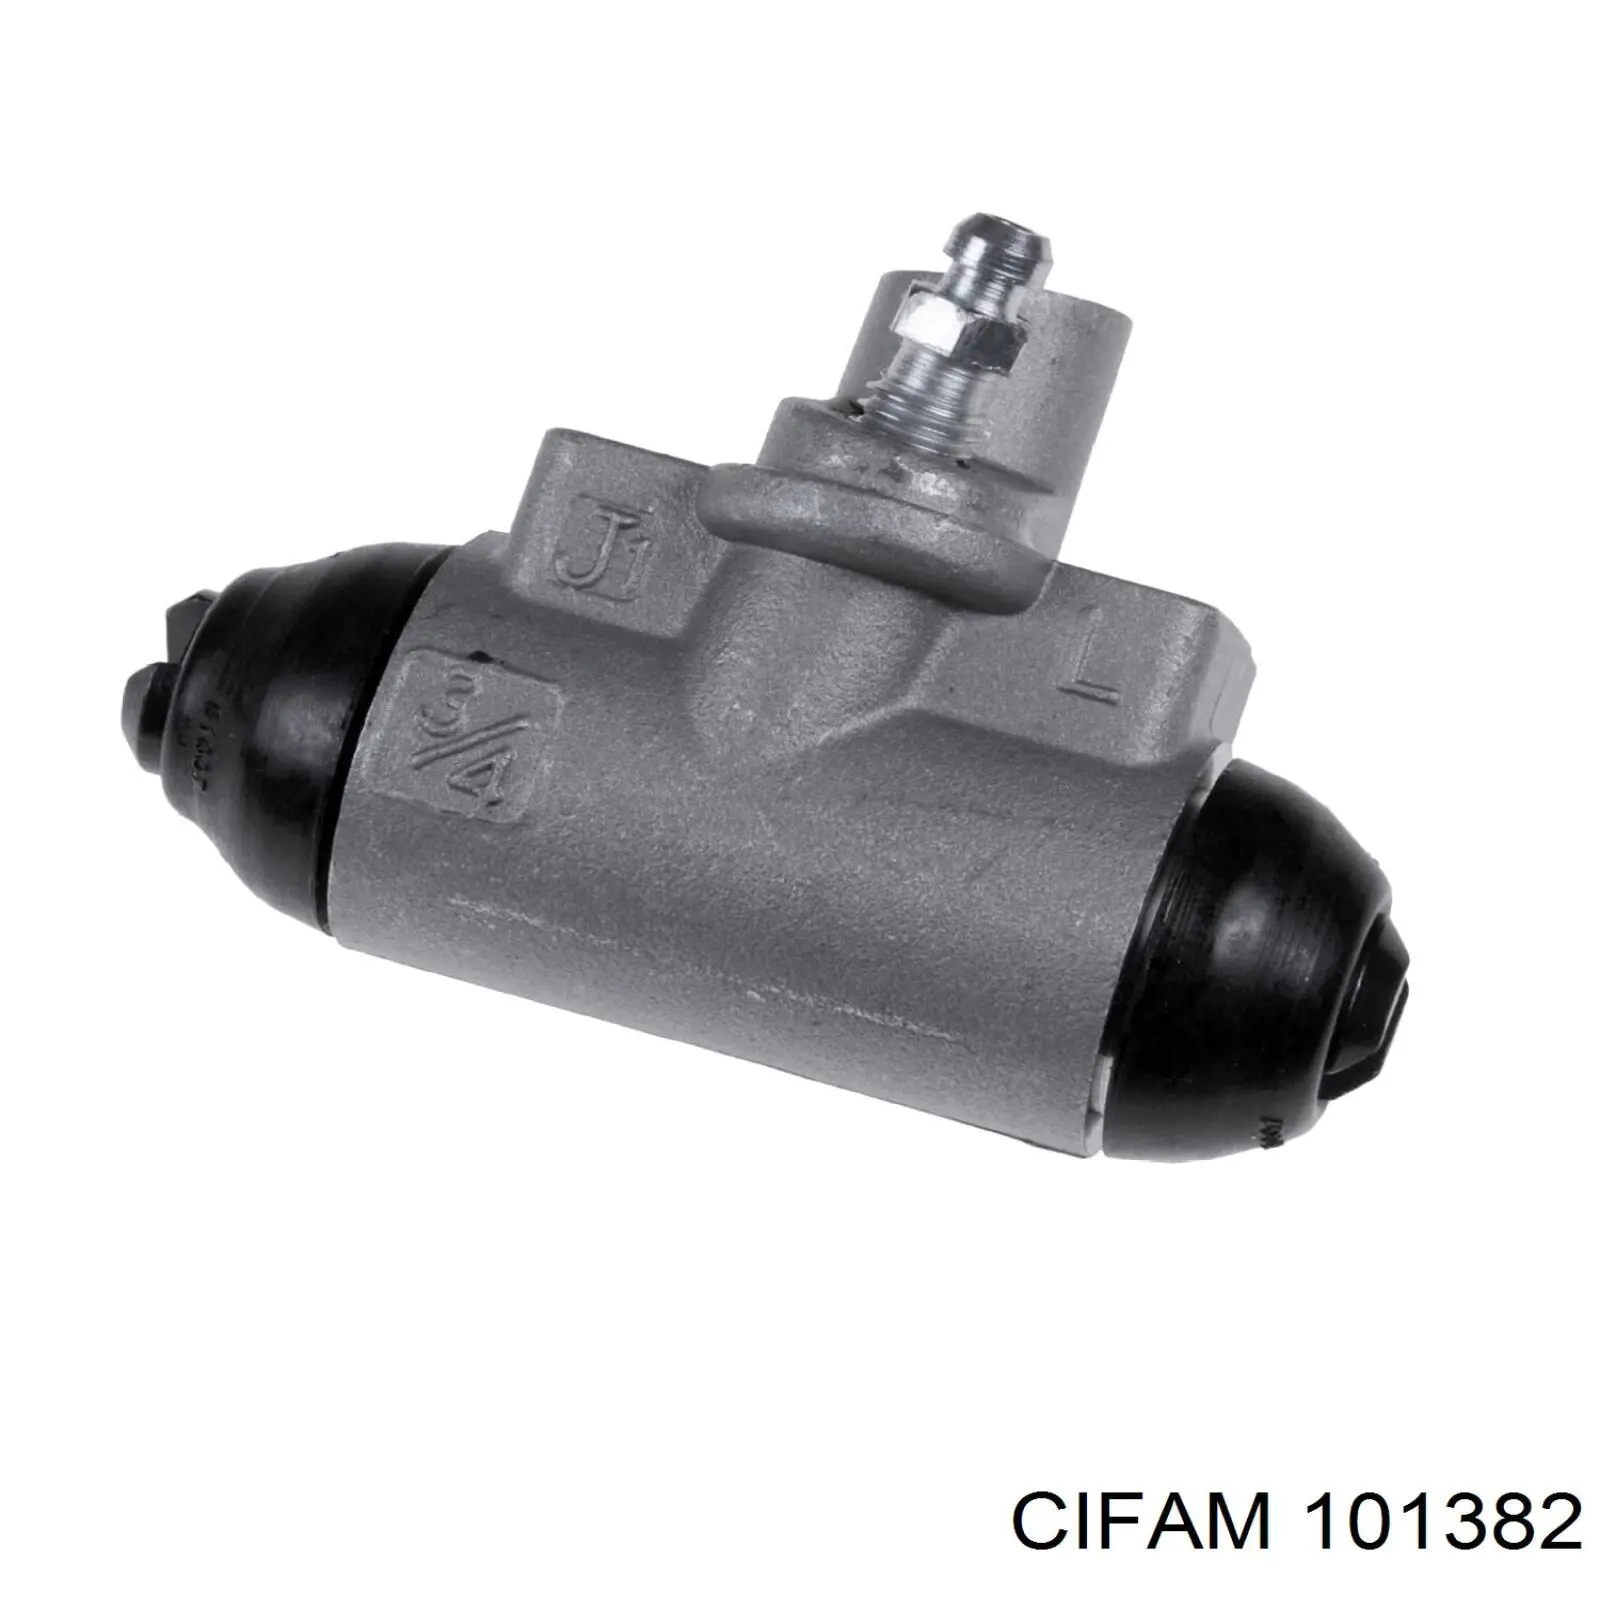 101-382 Cifam цилиндр тормозной колесный рабочий задний